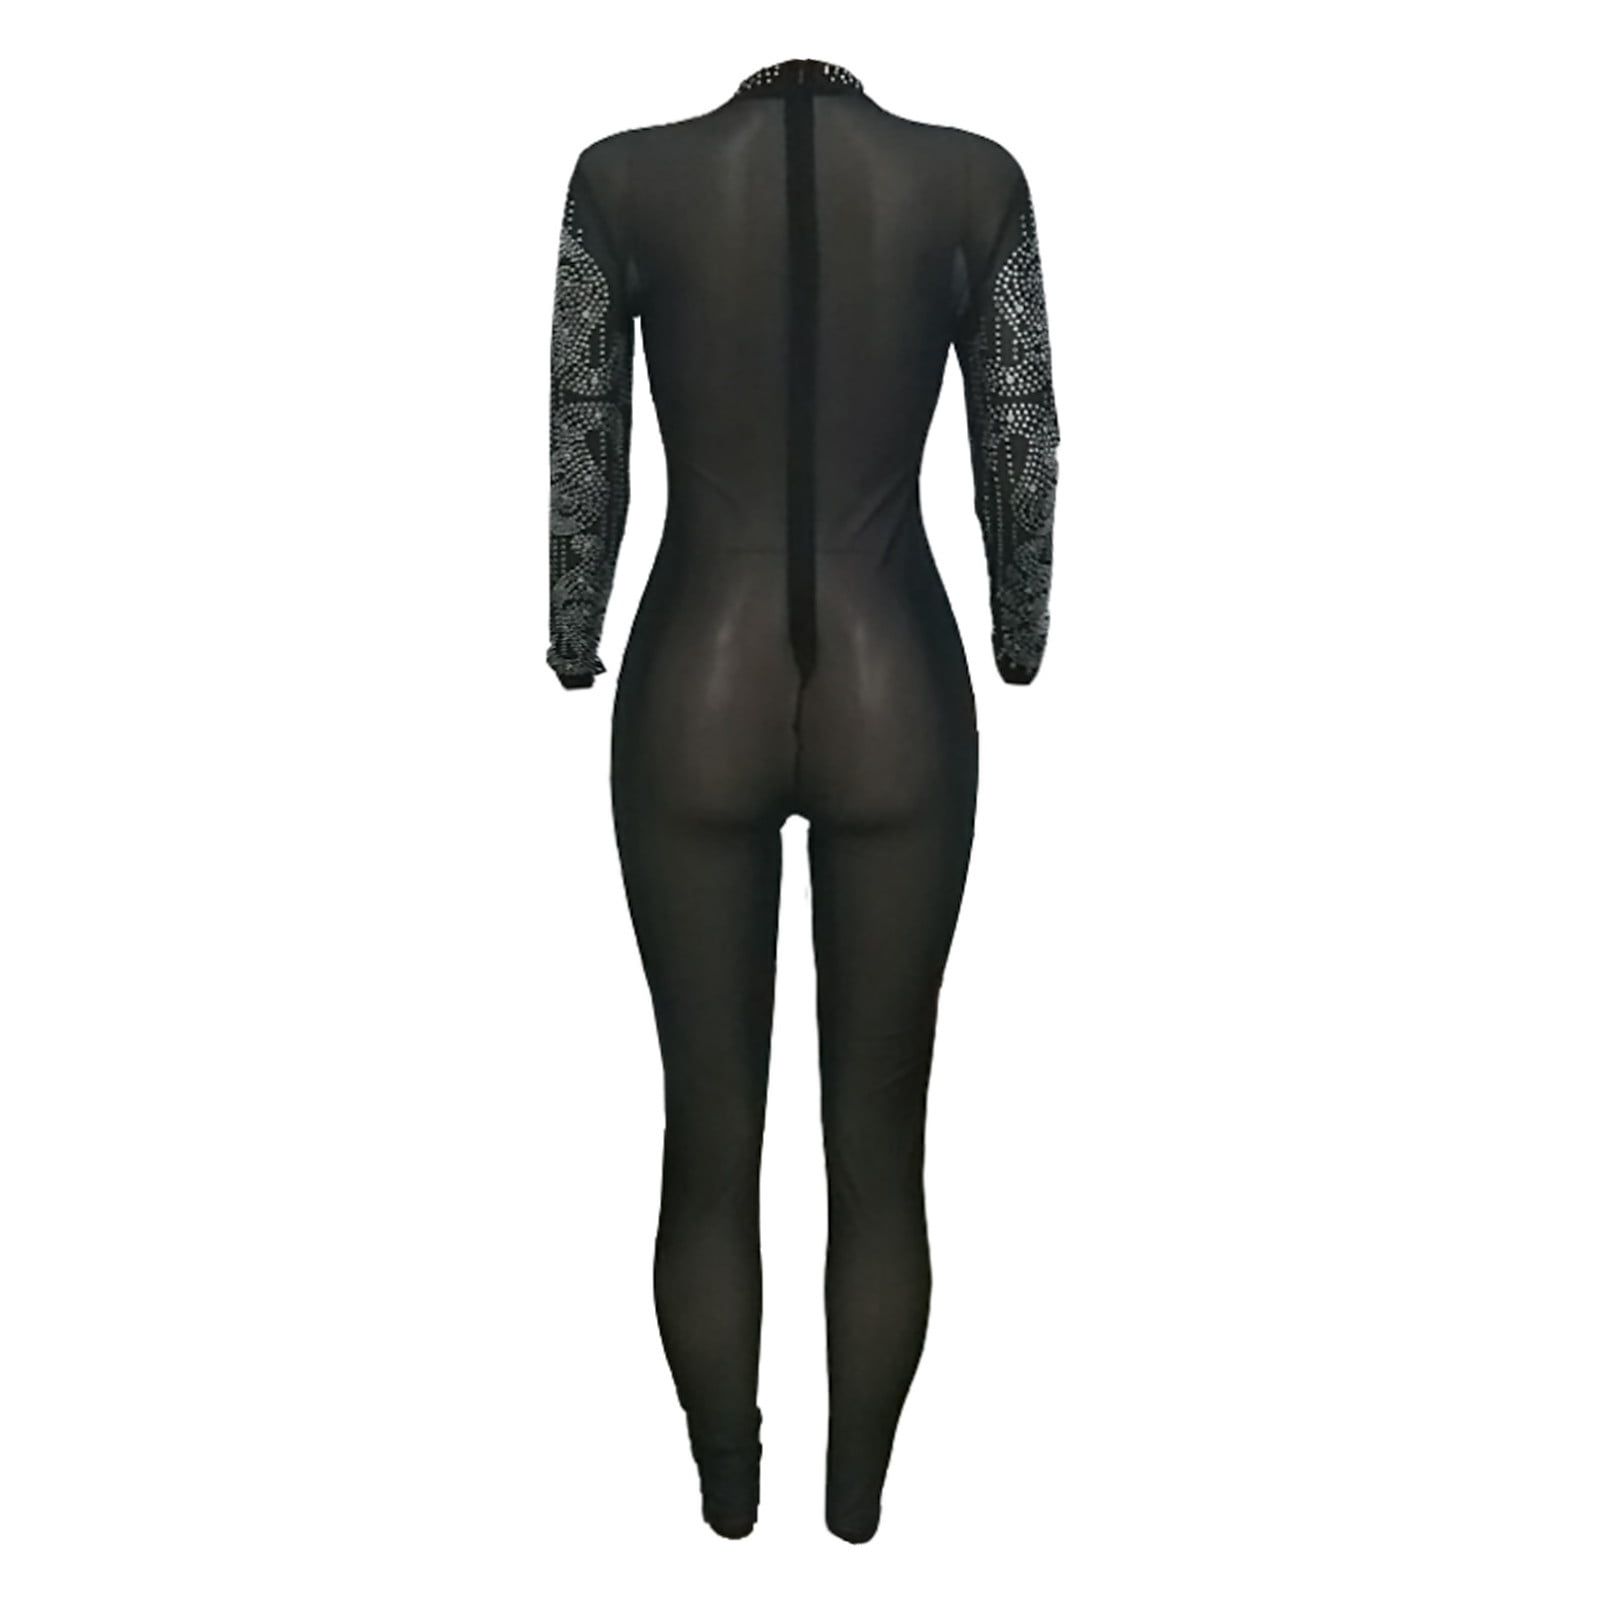 Aayomet Dressy Jumpsuits For Women Women's Zipper V Neck Long Sleeve  Jumpsuit Rompers Bodysuit Catsuit Sport Jumpsuit,Blue XXL 